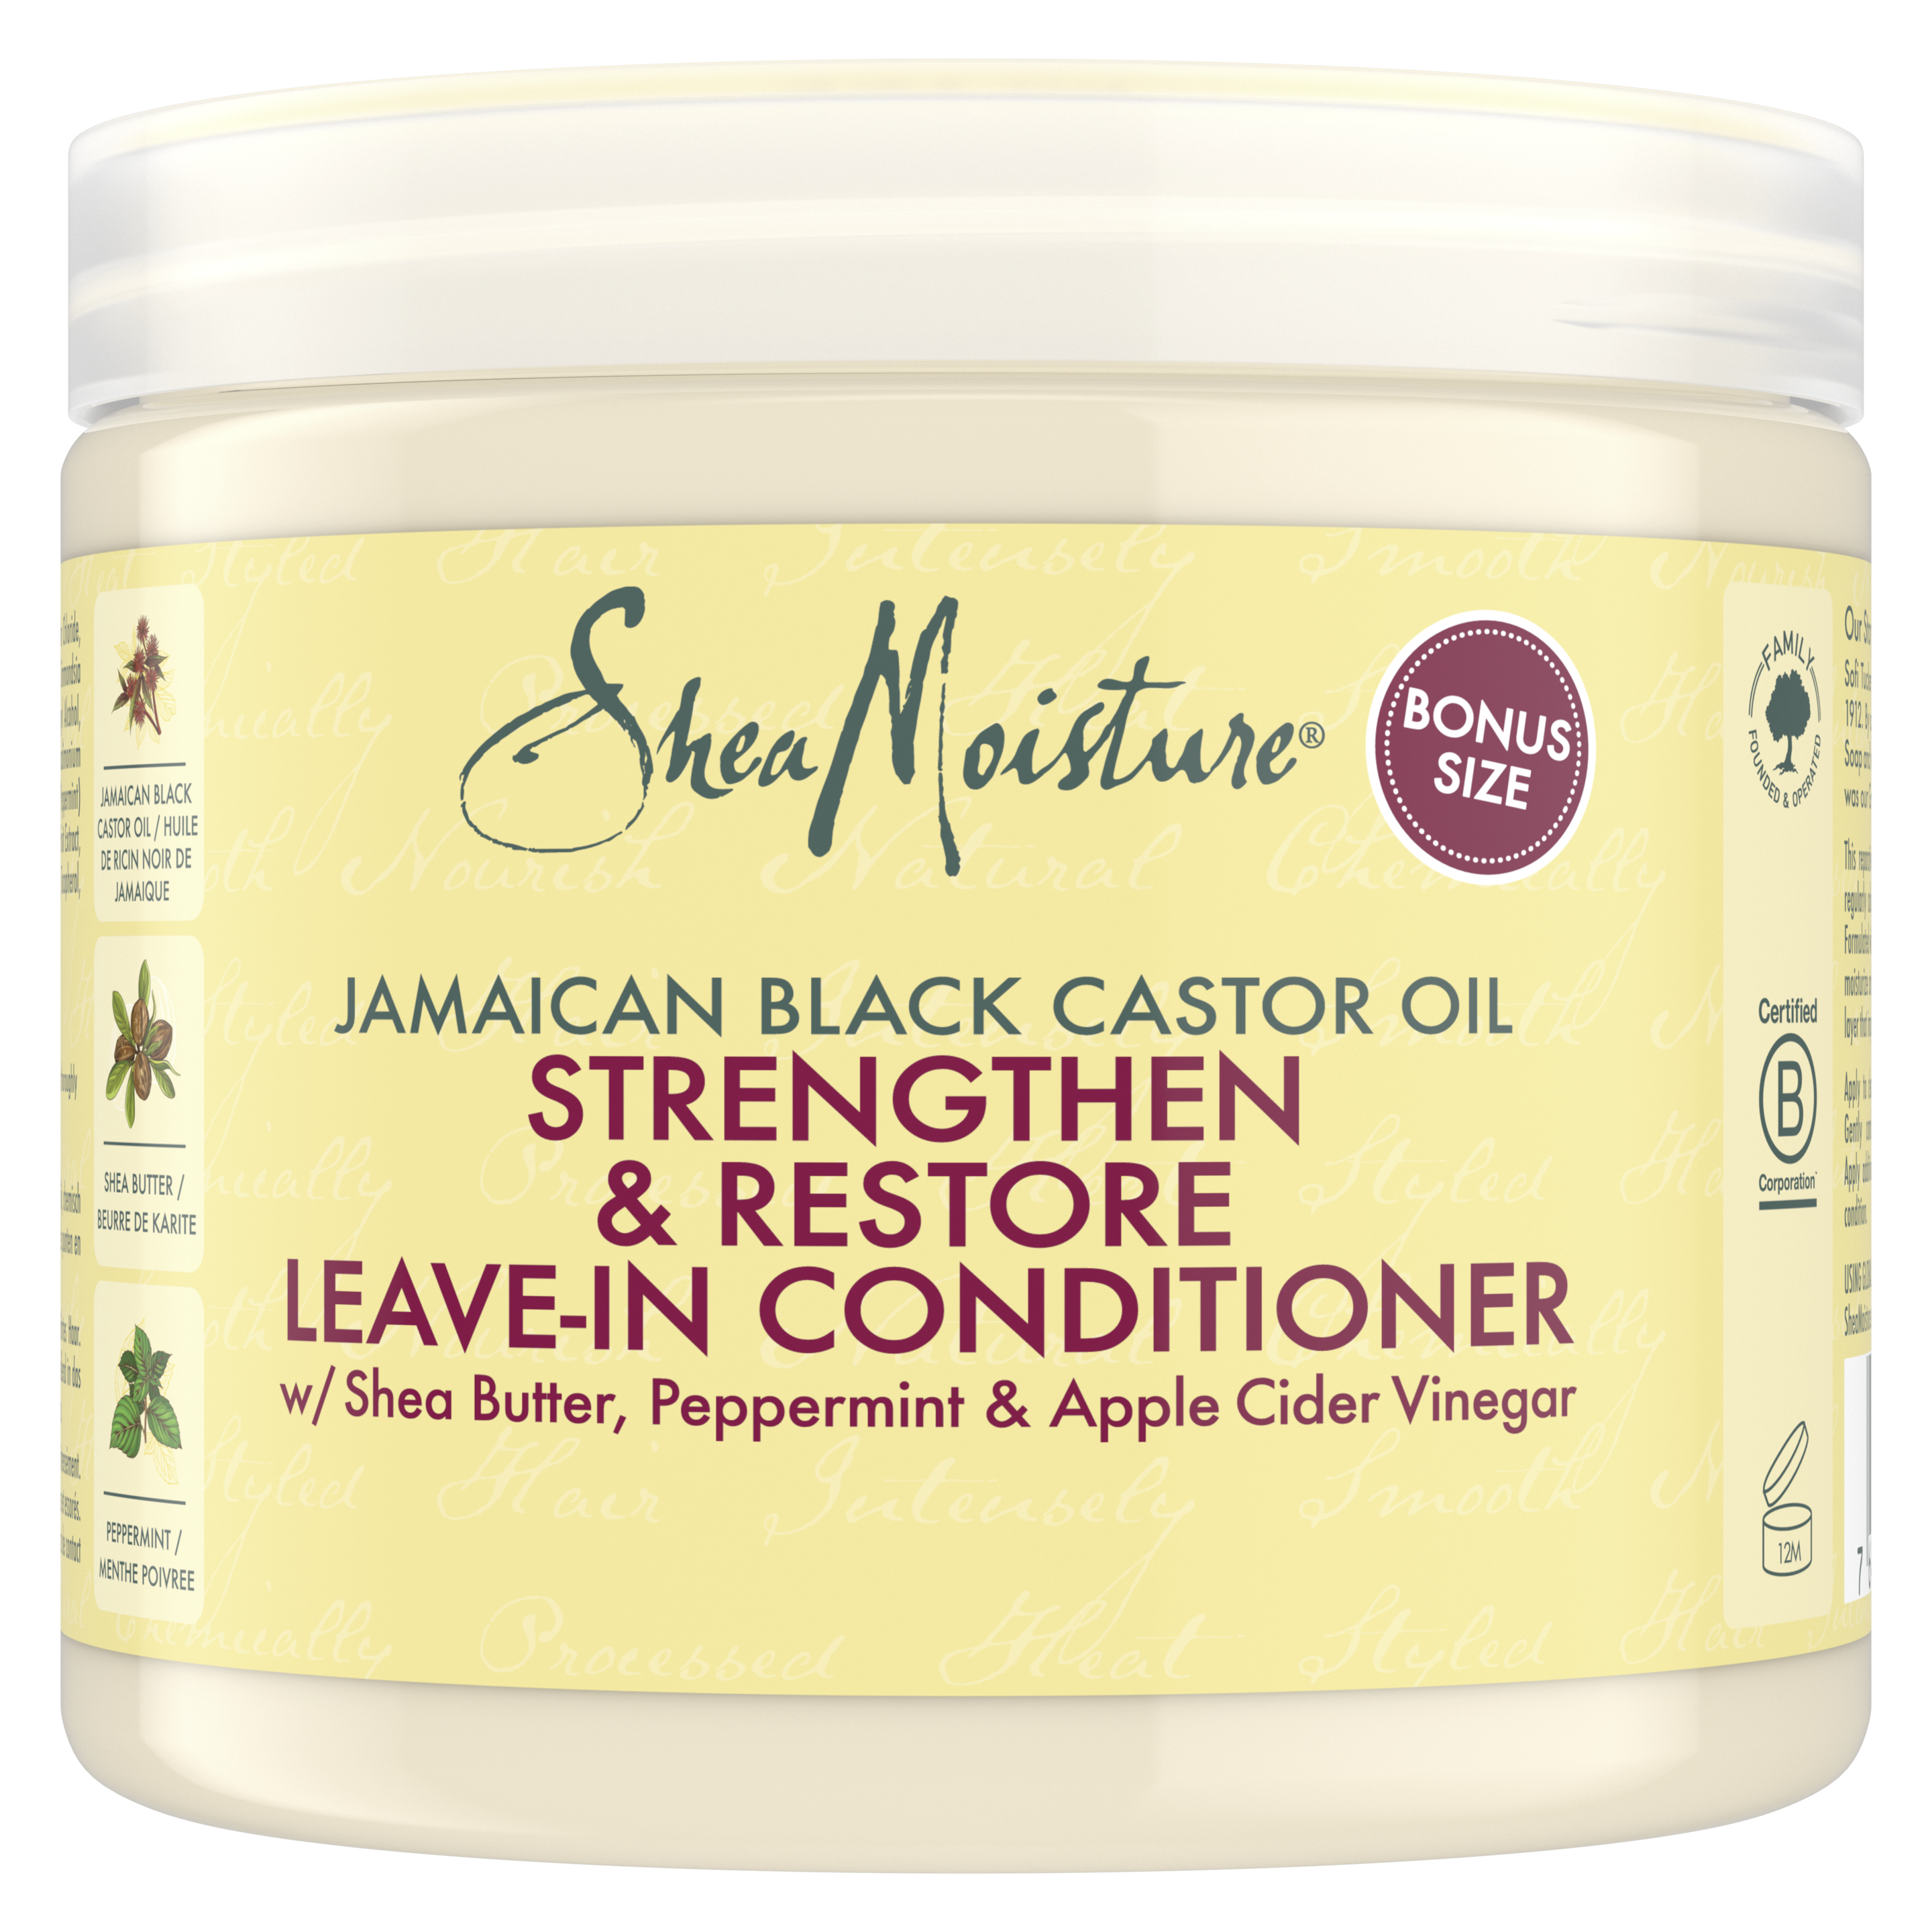 Jamaican Black Castor Oil Leave-in Condtioner